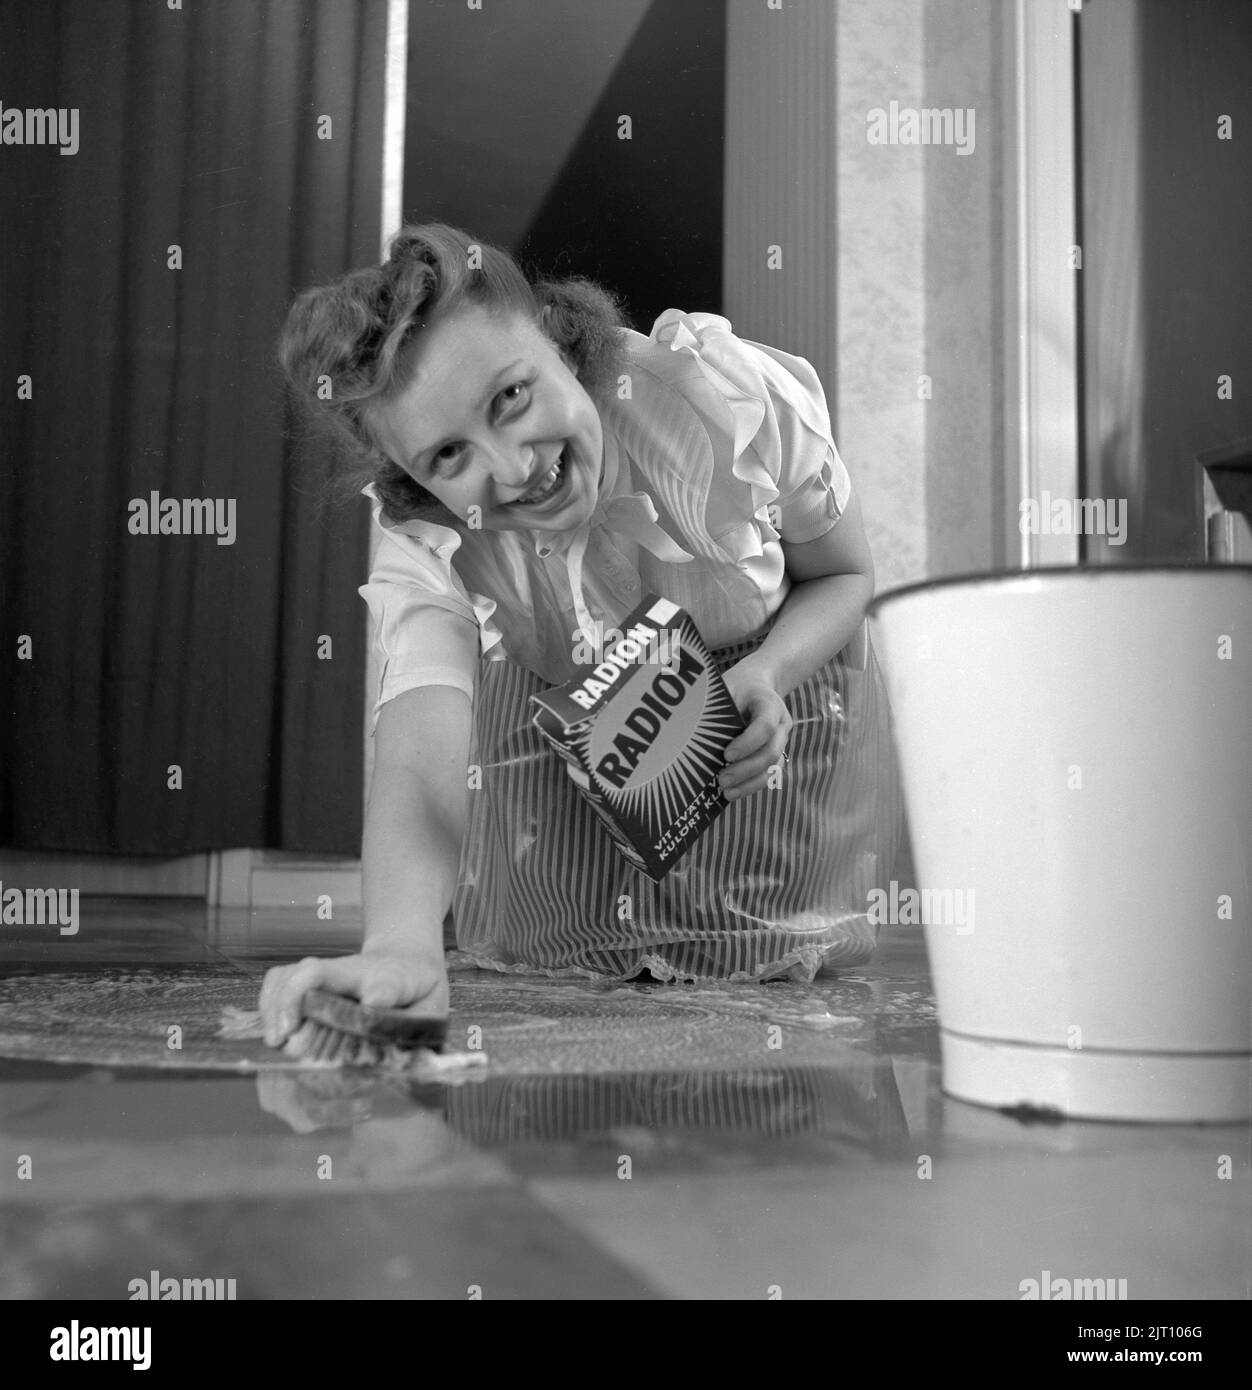 Nettoyer le plancher à l'arrière. Une jeune femme est couché sur le sol et se frotte pour nettoyer le sol. Suède 1952 Conard réf. 2220 Banque D'Images